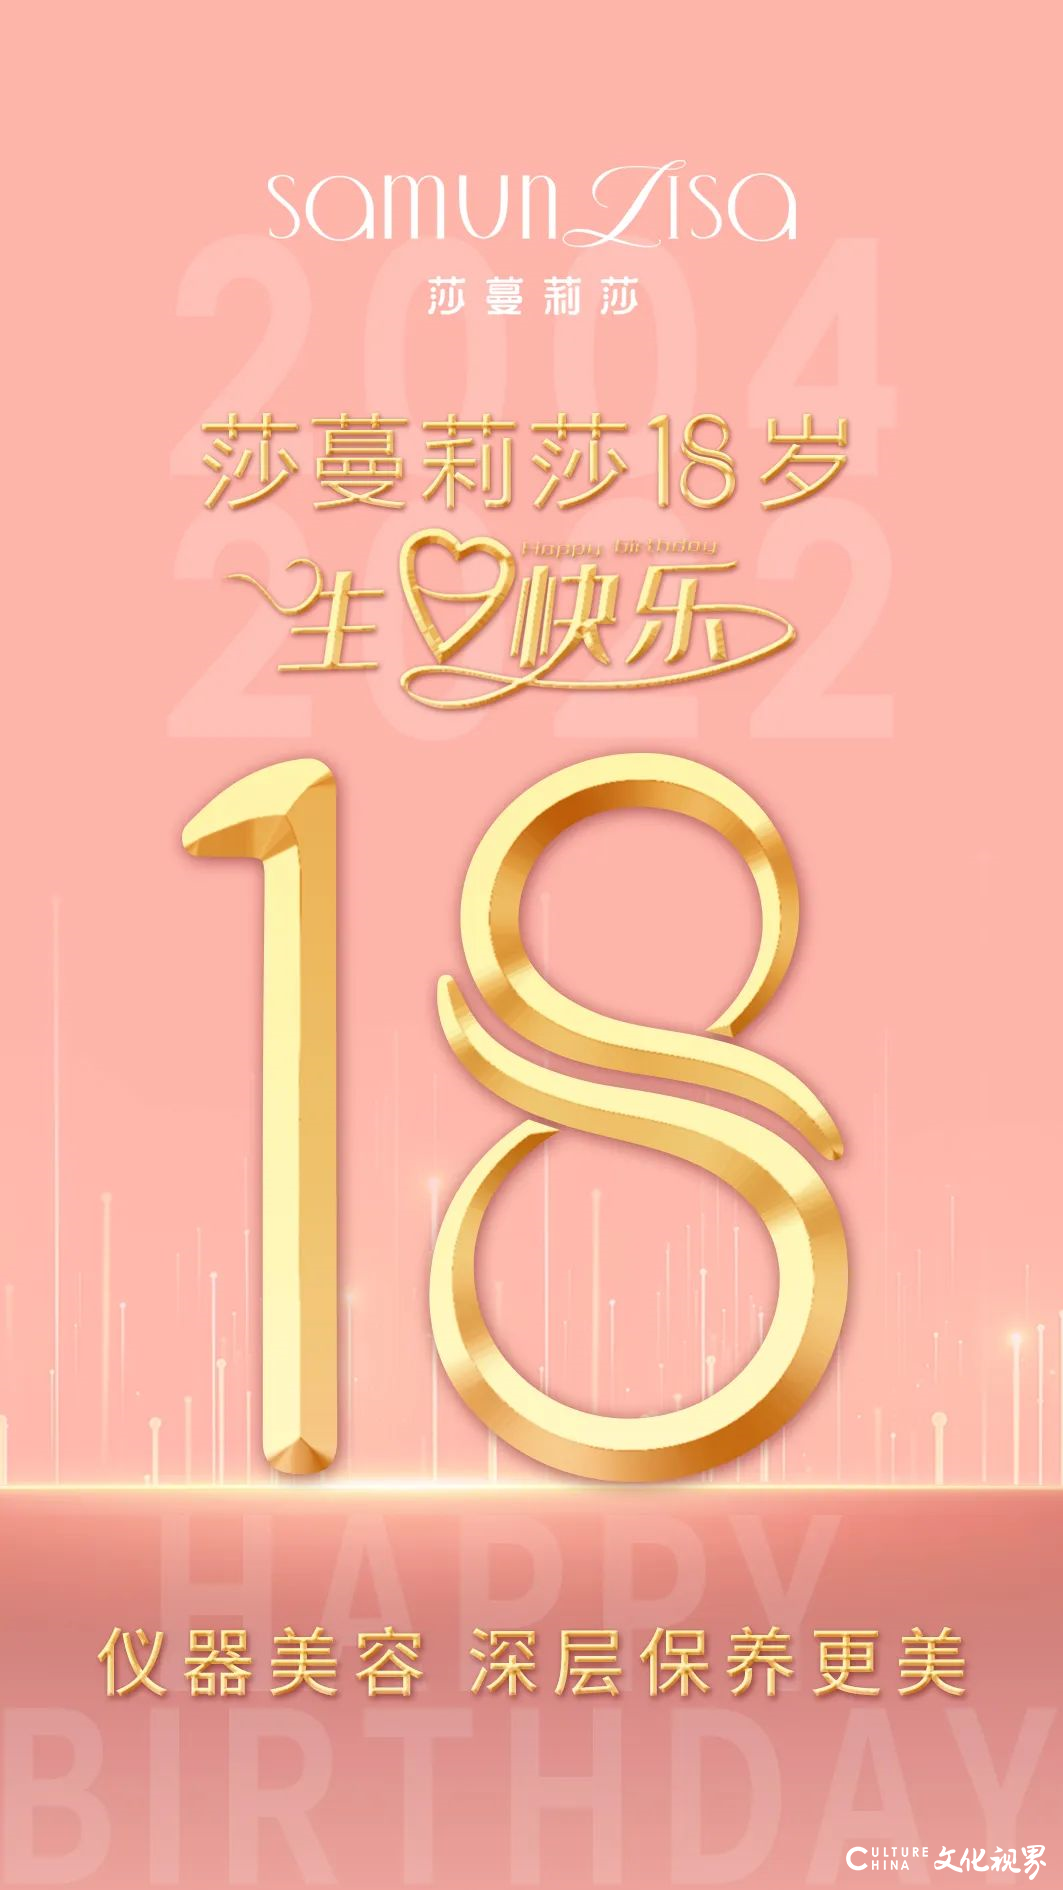 莎蔓莉莎总裁庄玲倾情演绎MV，祝莎蔓莉莎18周岁生日快乐